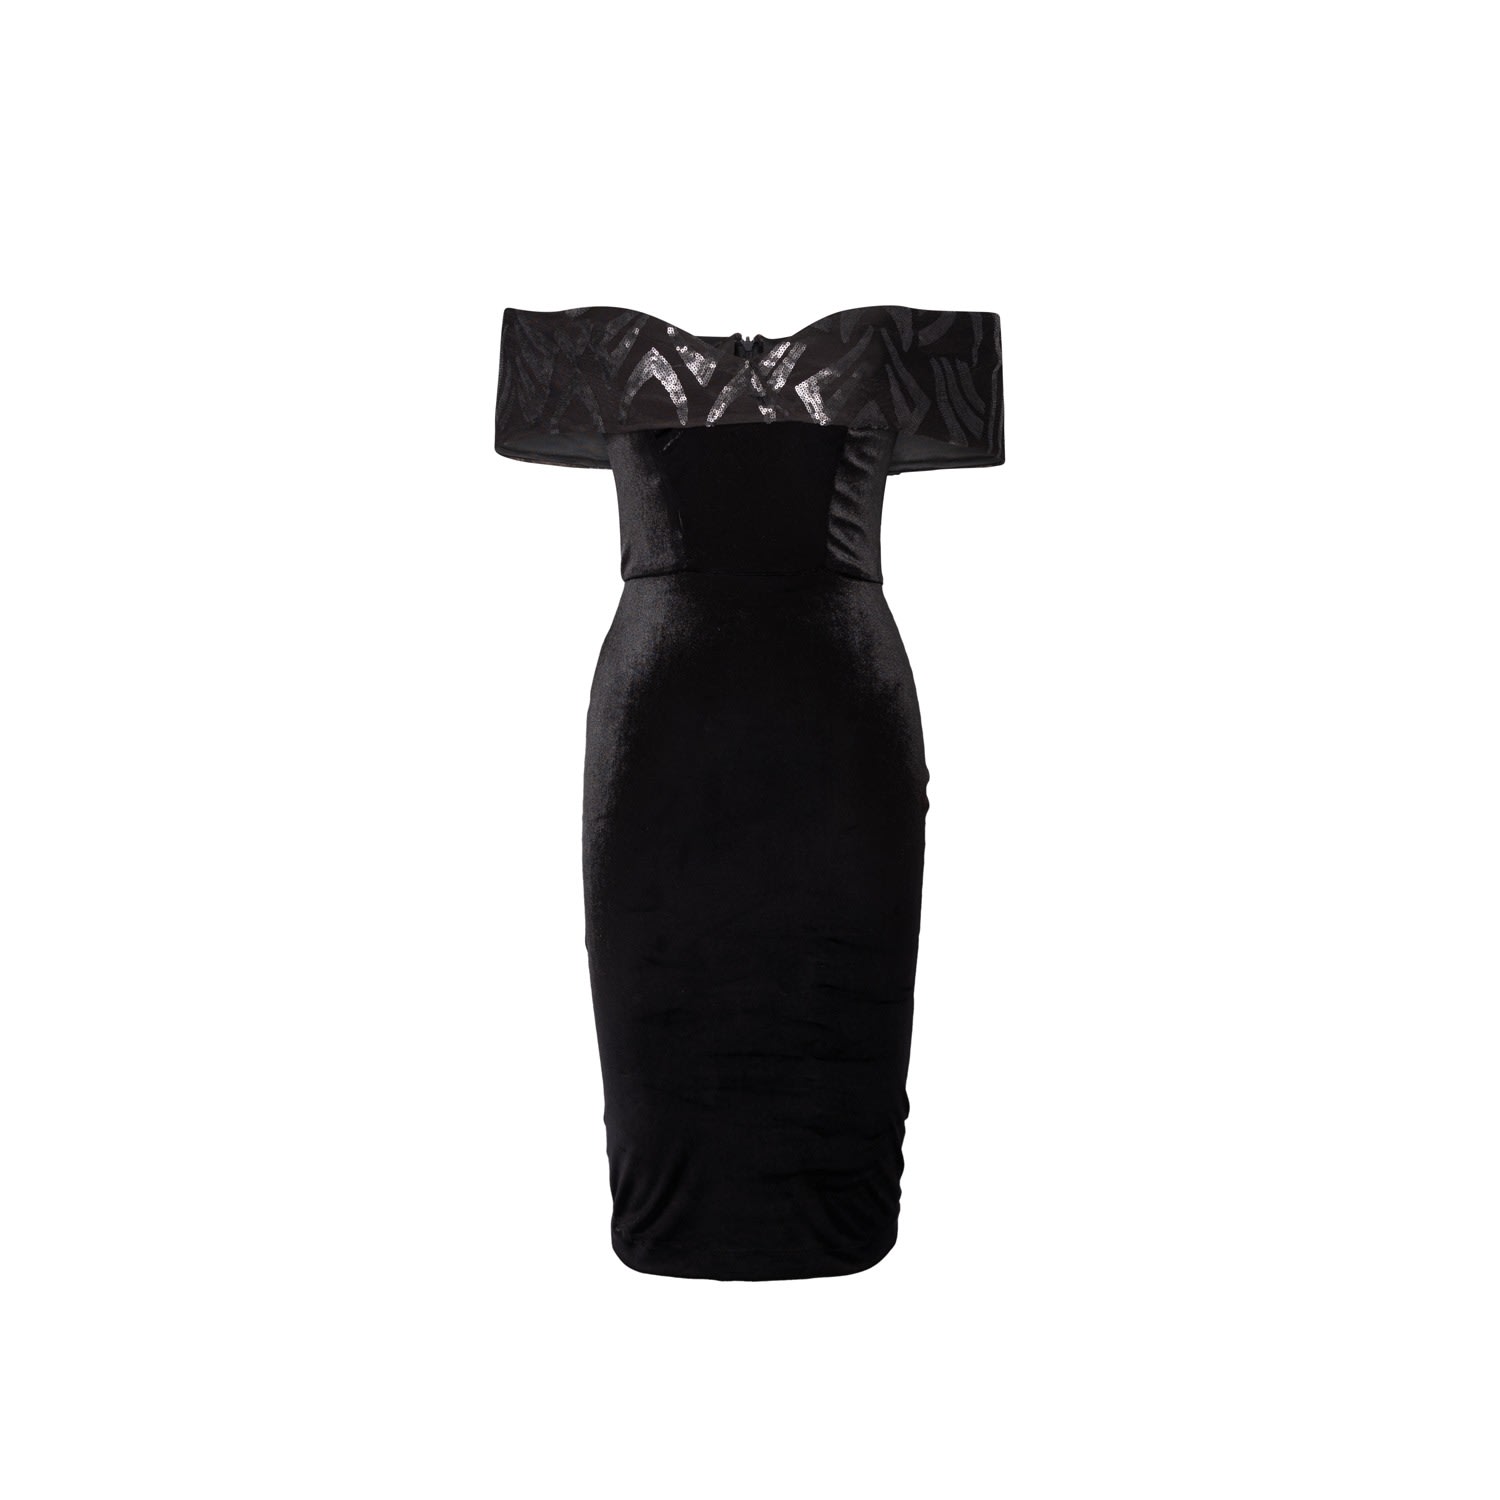 Women’s Cocktail Dress In Black Velvet Whit Sequin Embellished Neckline Extra Small Vidi Blak